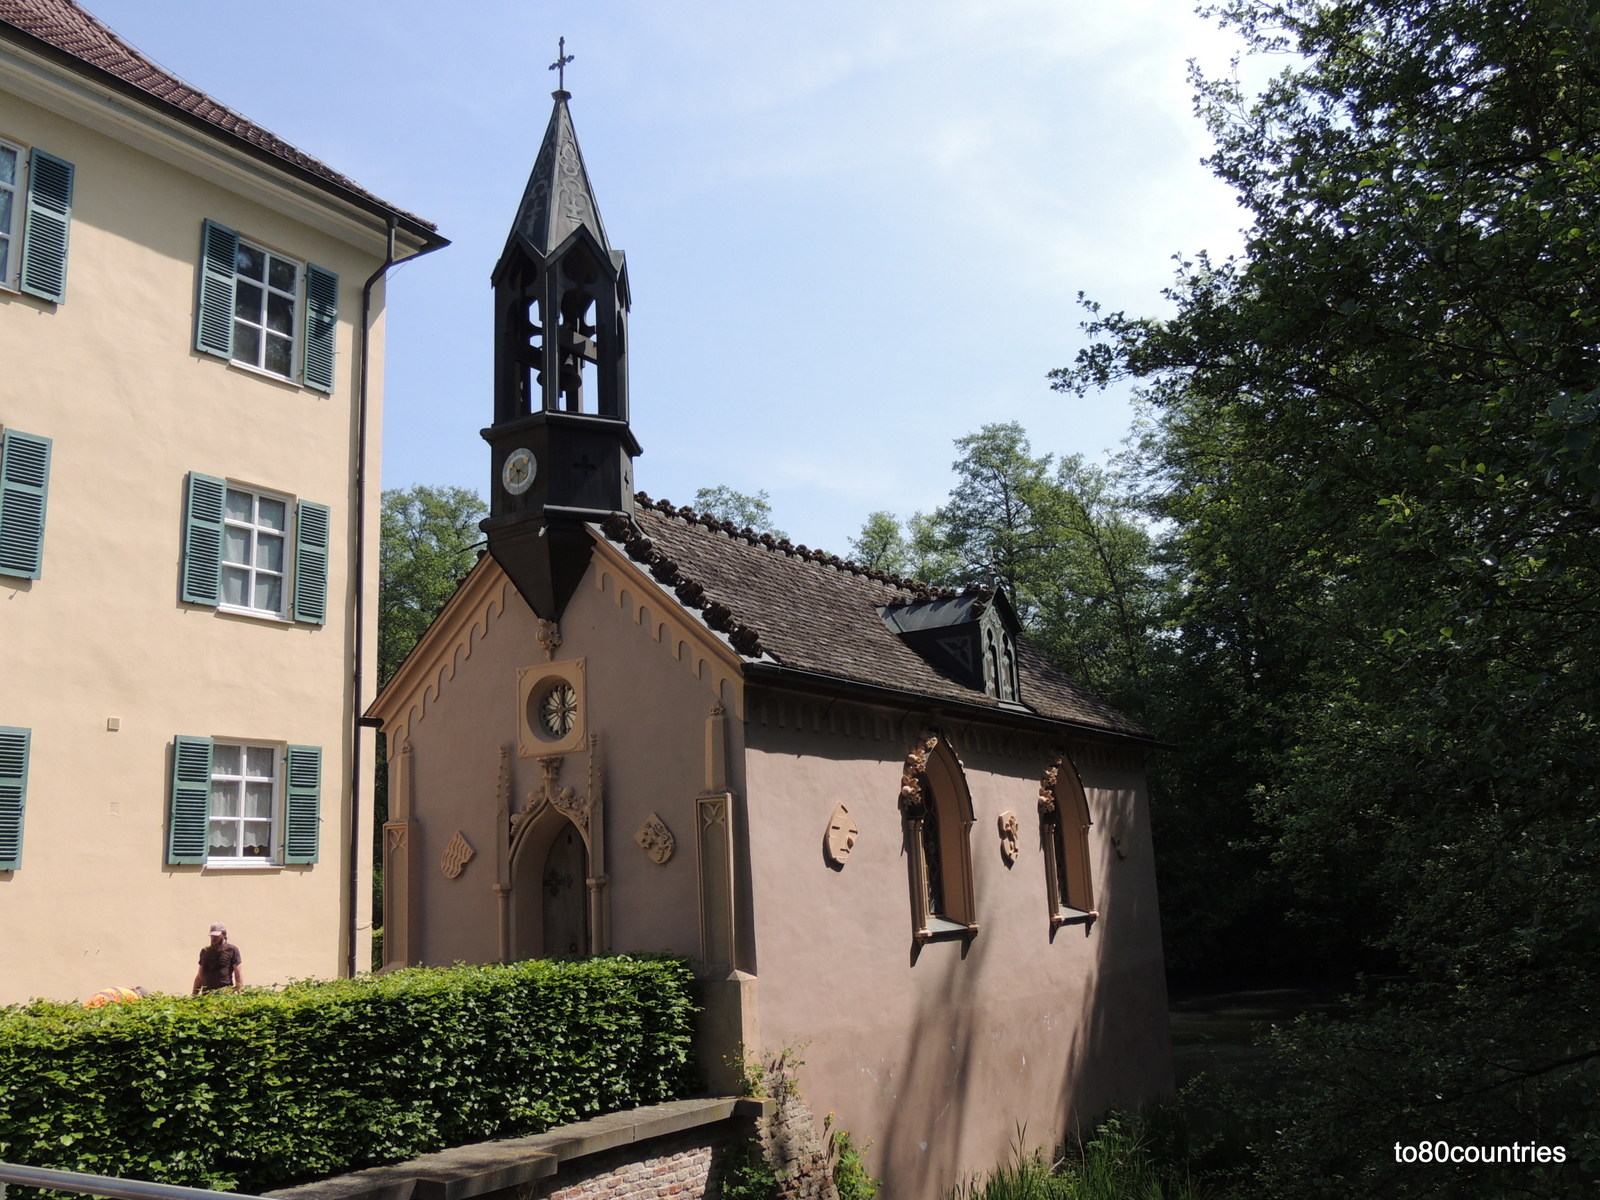 Ehemaliges Wittelsbacher Jagdschloss von Herzog Max in Bayern - Schlosskapelle